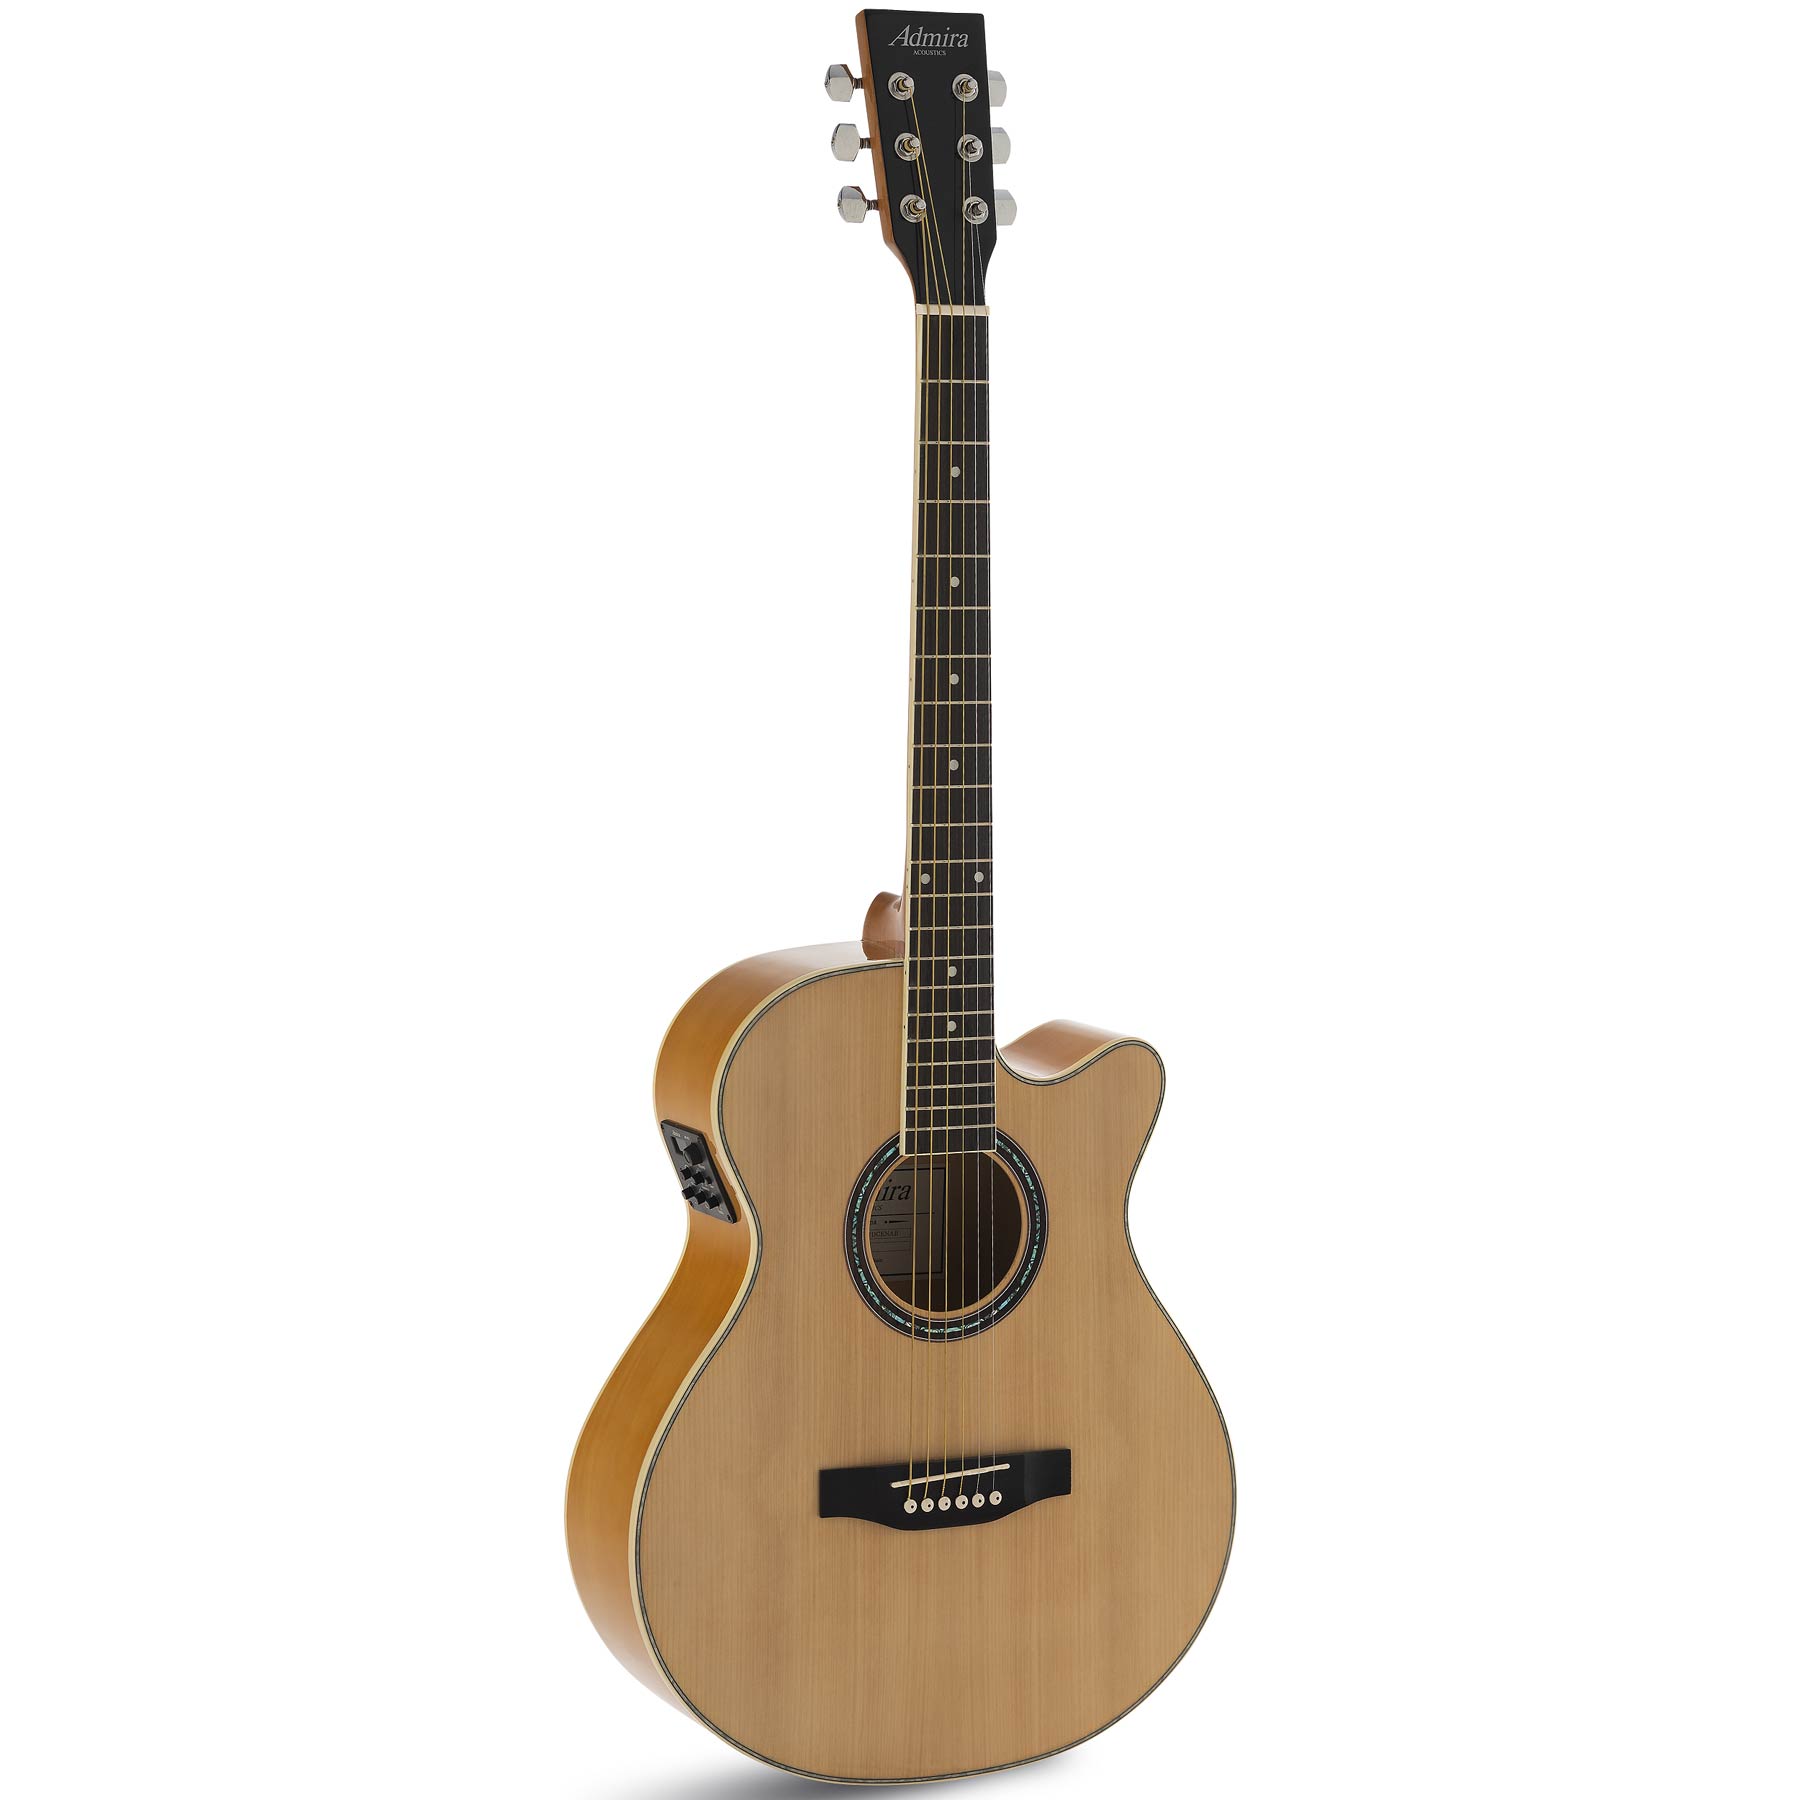 Compra las nuevas guitarras acusticas admira al mejor precio en Prieto Msica